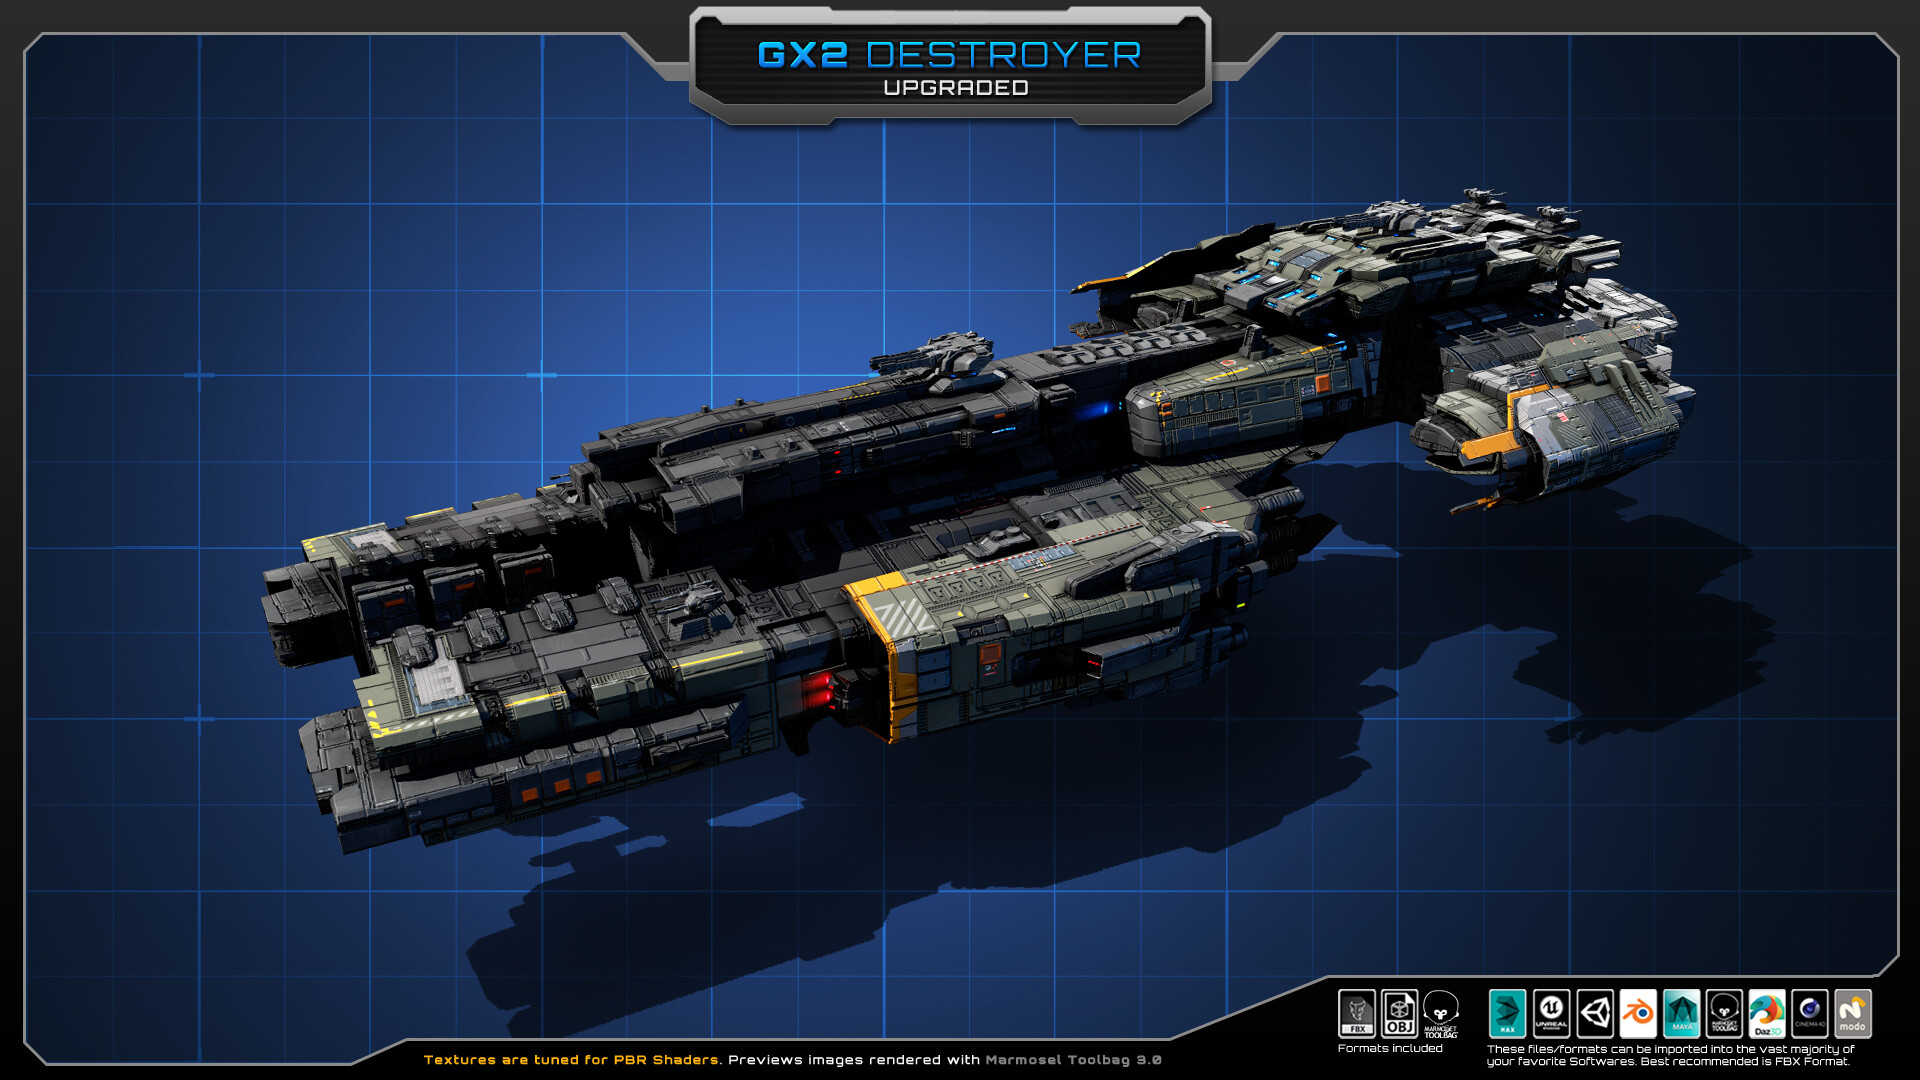 ArtStation - GX2 Destroyer Spacecraft